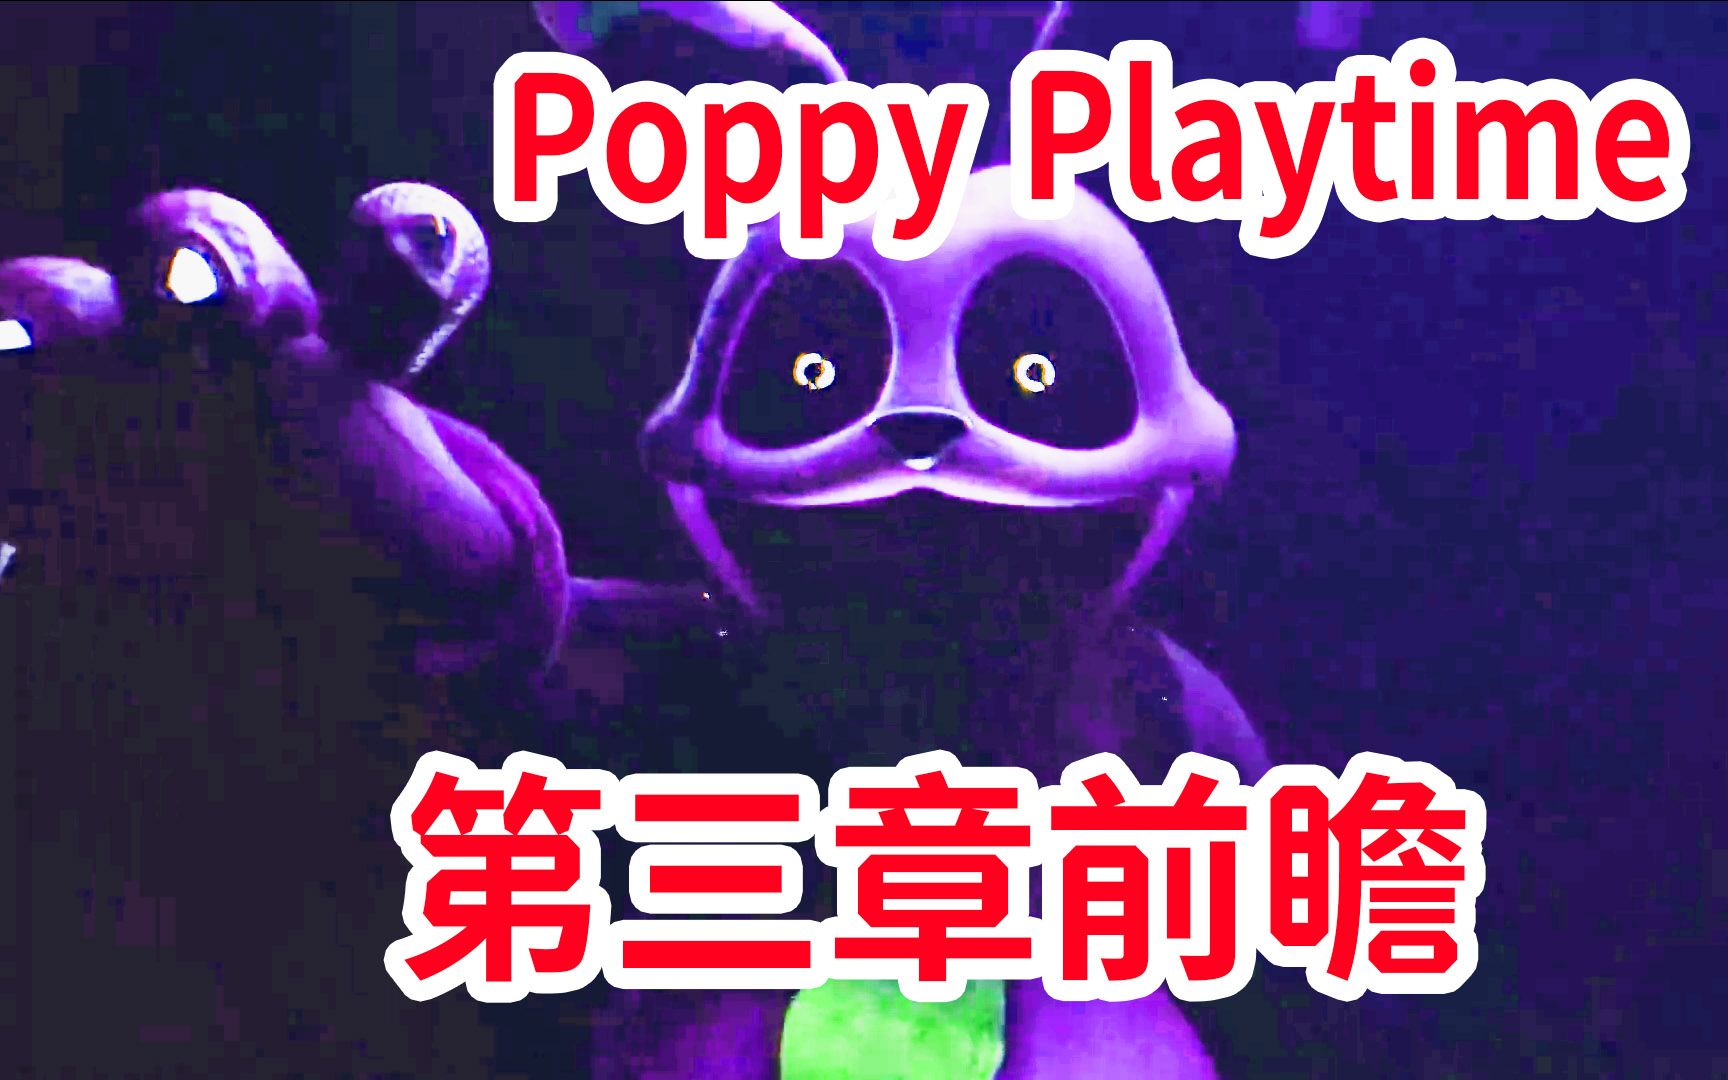 怪物的真面目！？第三章消息前瞻猜想《Poppy Playtime》chapter 3